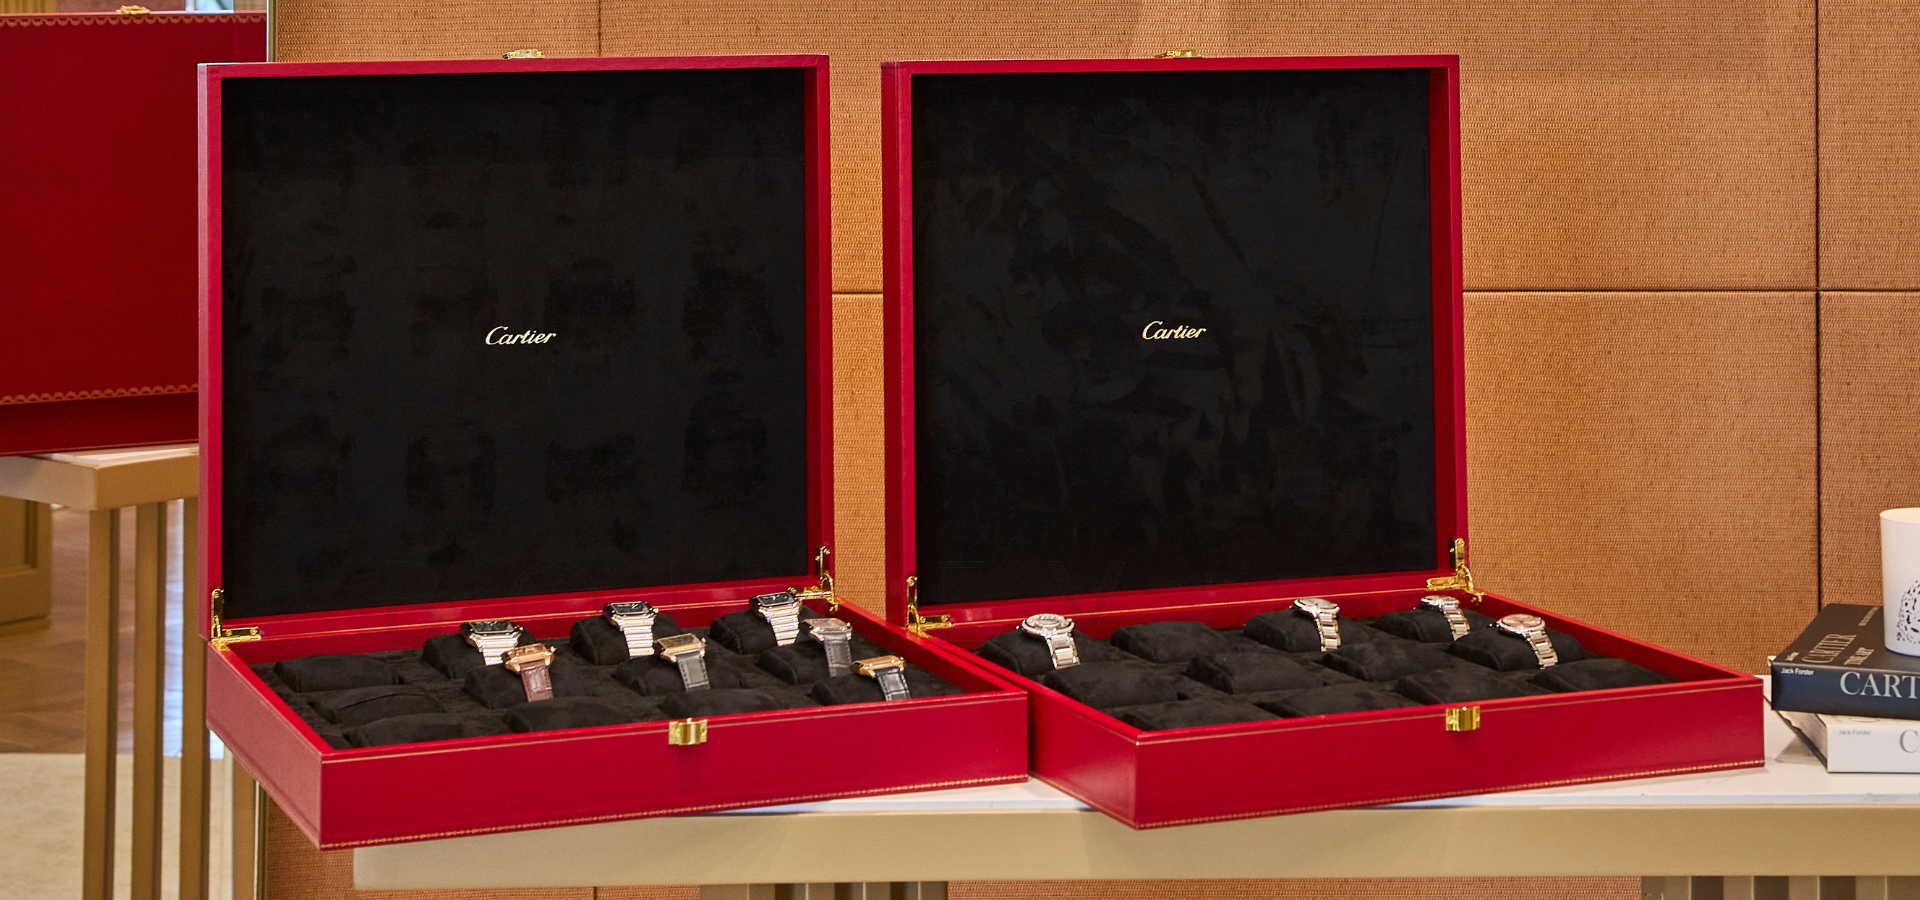 Cartier Watches and Wonder Novelties